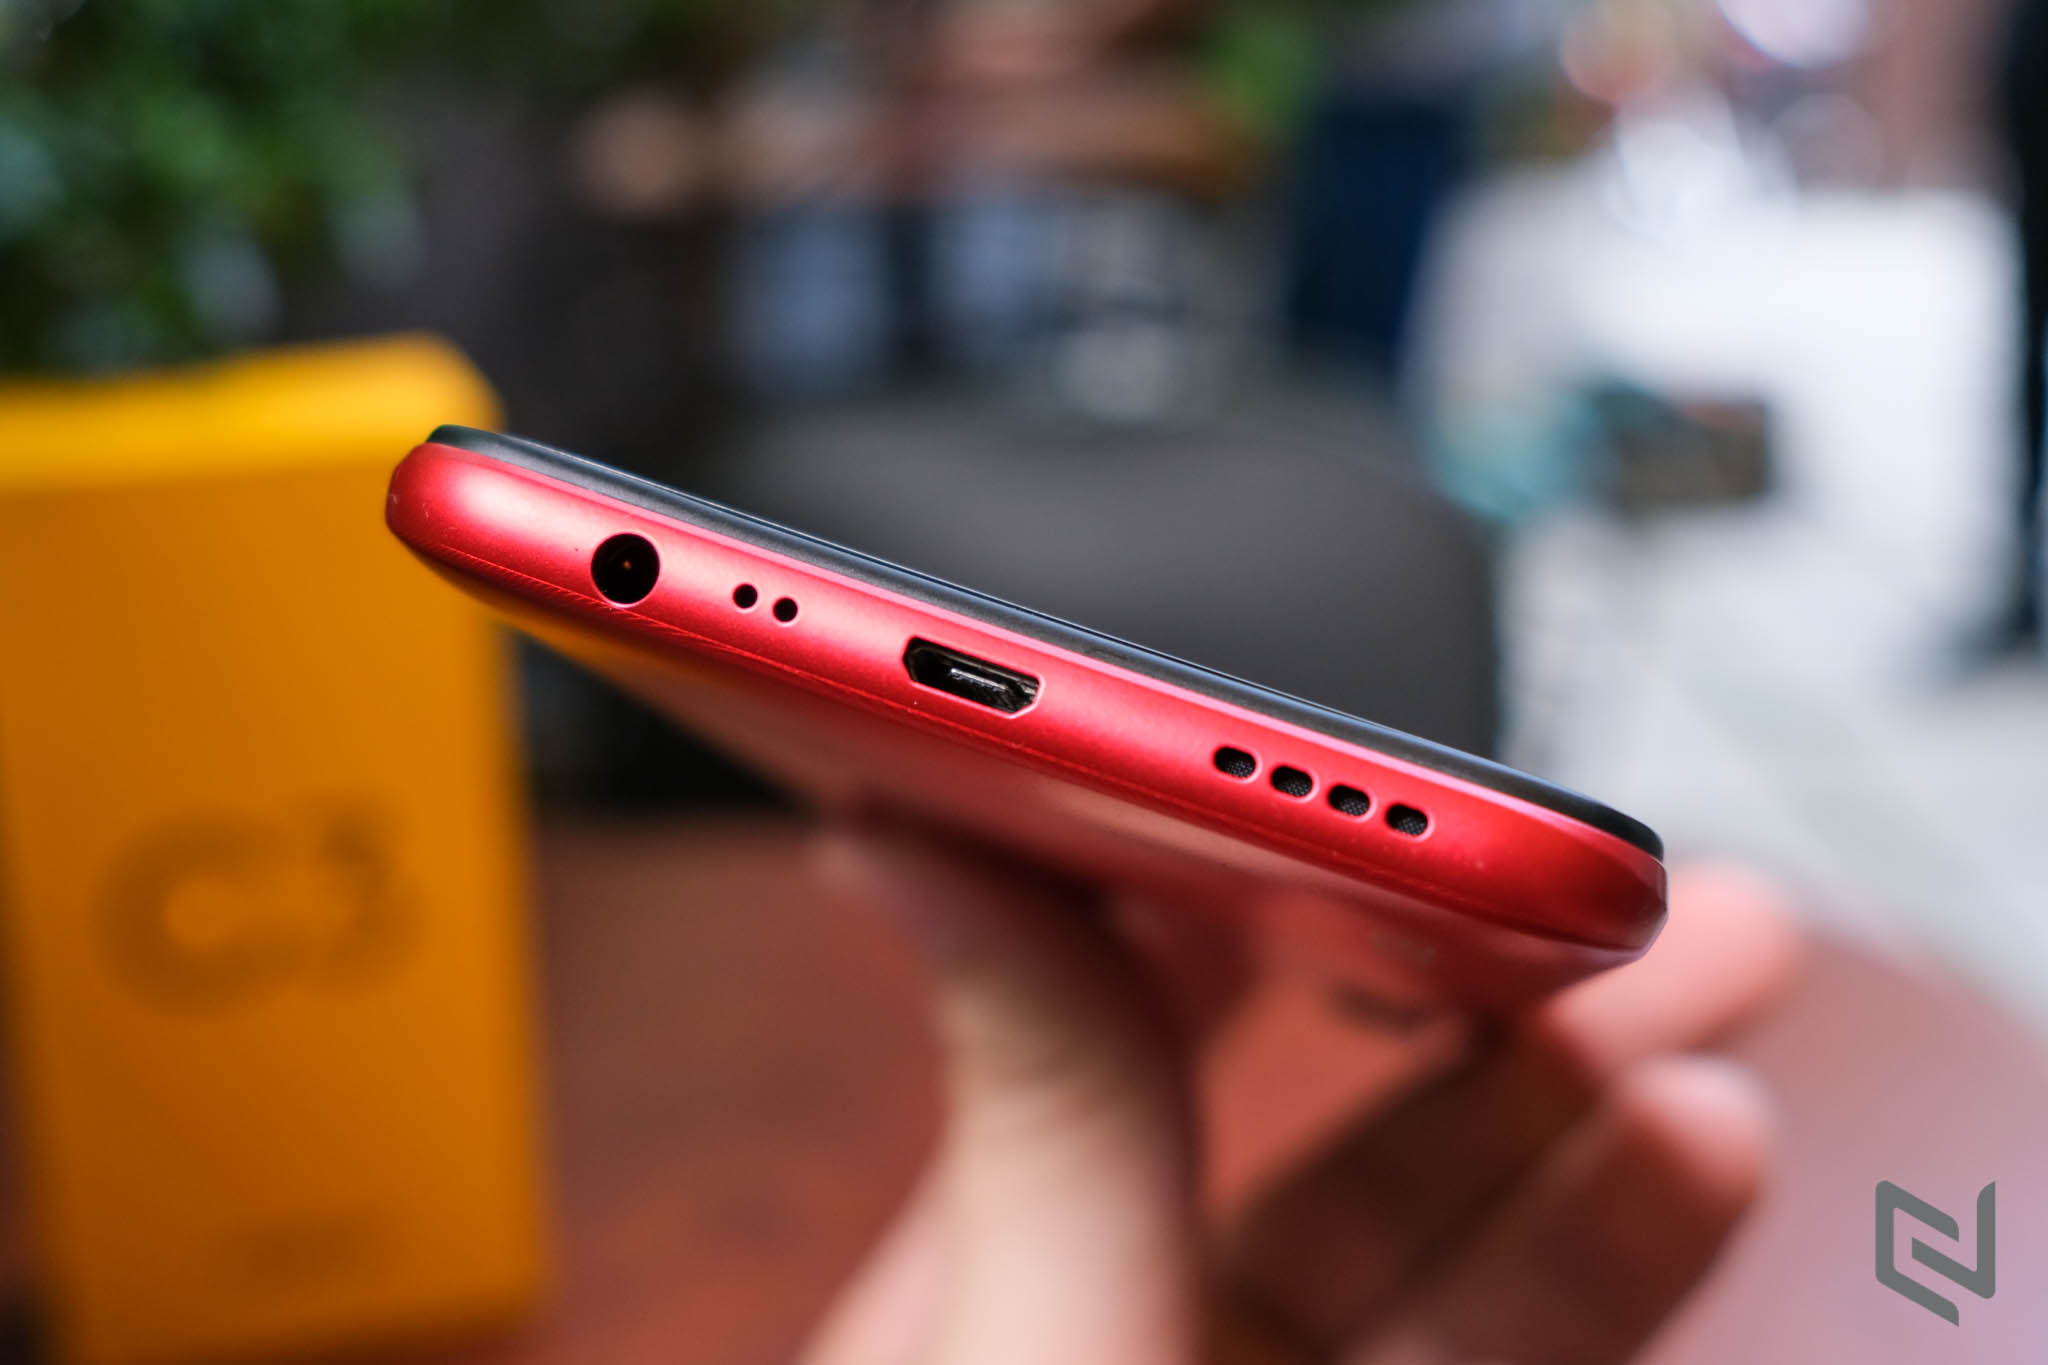 Trên tay Realme C3 sắp lên kệ thị trường Việt: Pin 5,000 mAh, 3 camera, cài sẵn Android 10